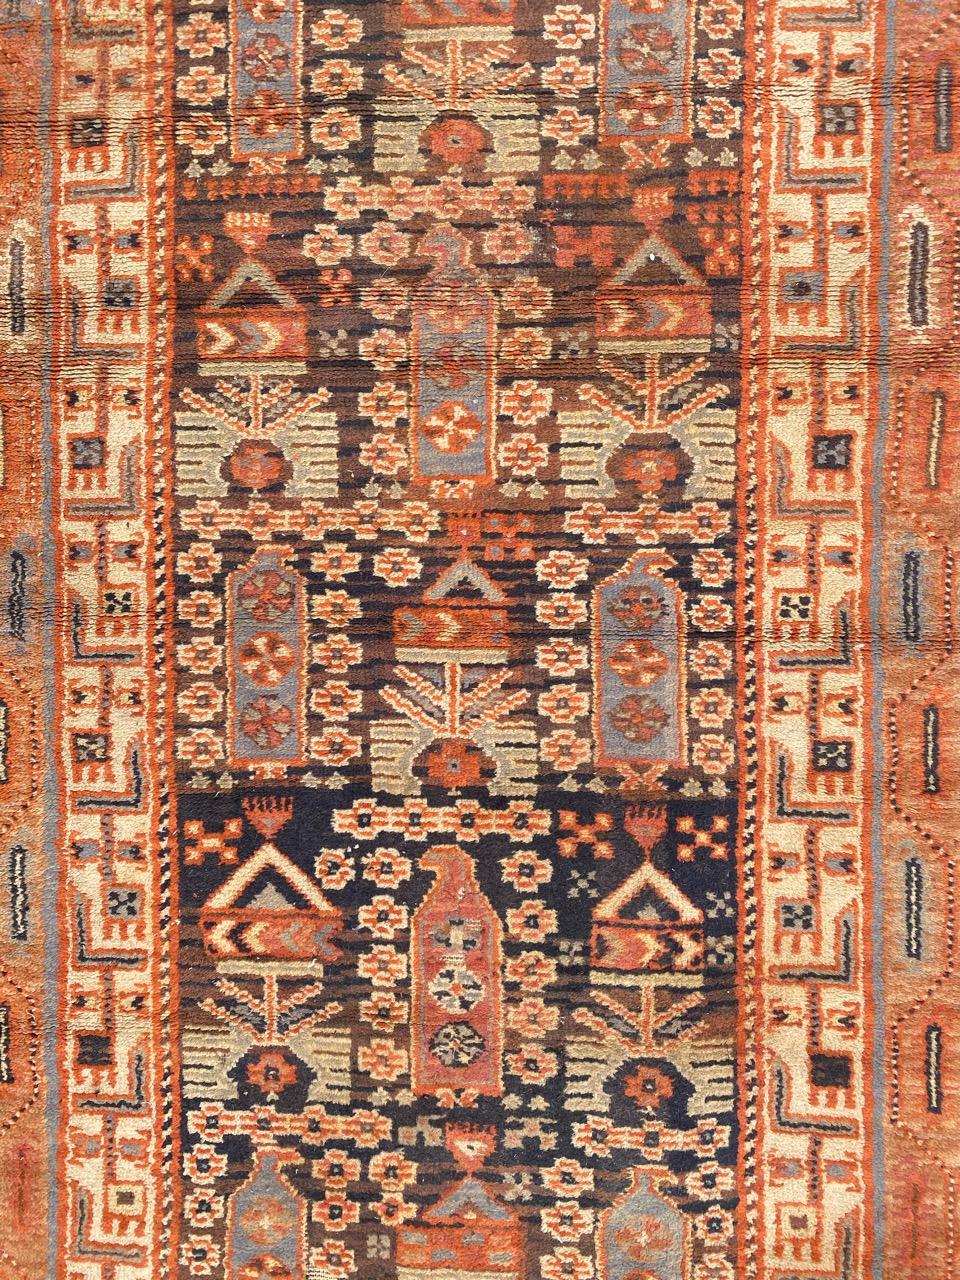 Magnifique tapis noué français du début du 20ème siècle avec un joli design persan et de belles couleurs, entièrement noué avec du velours de laine sur une base de coton.